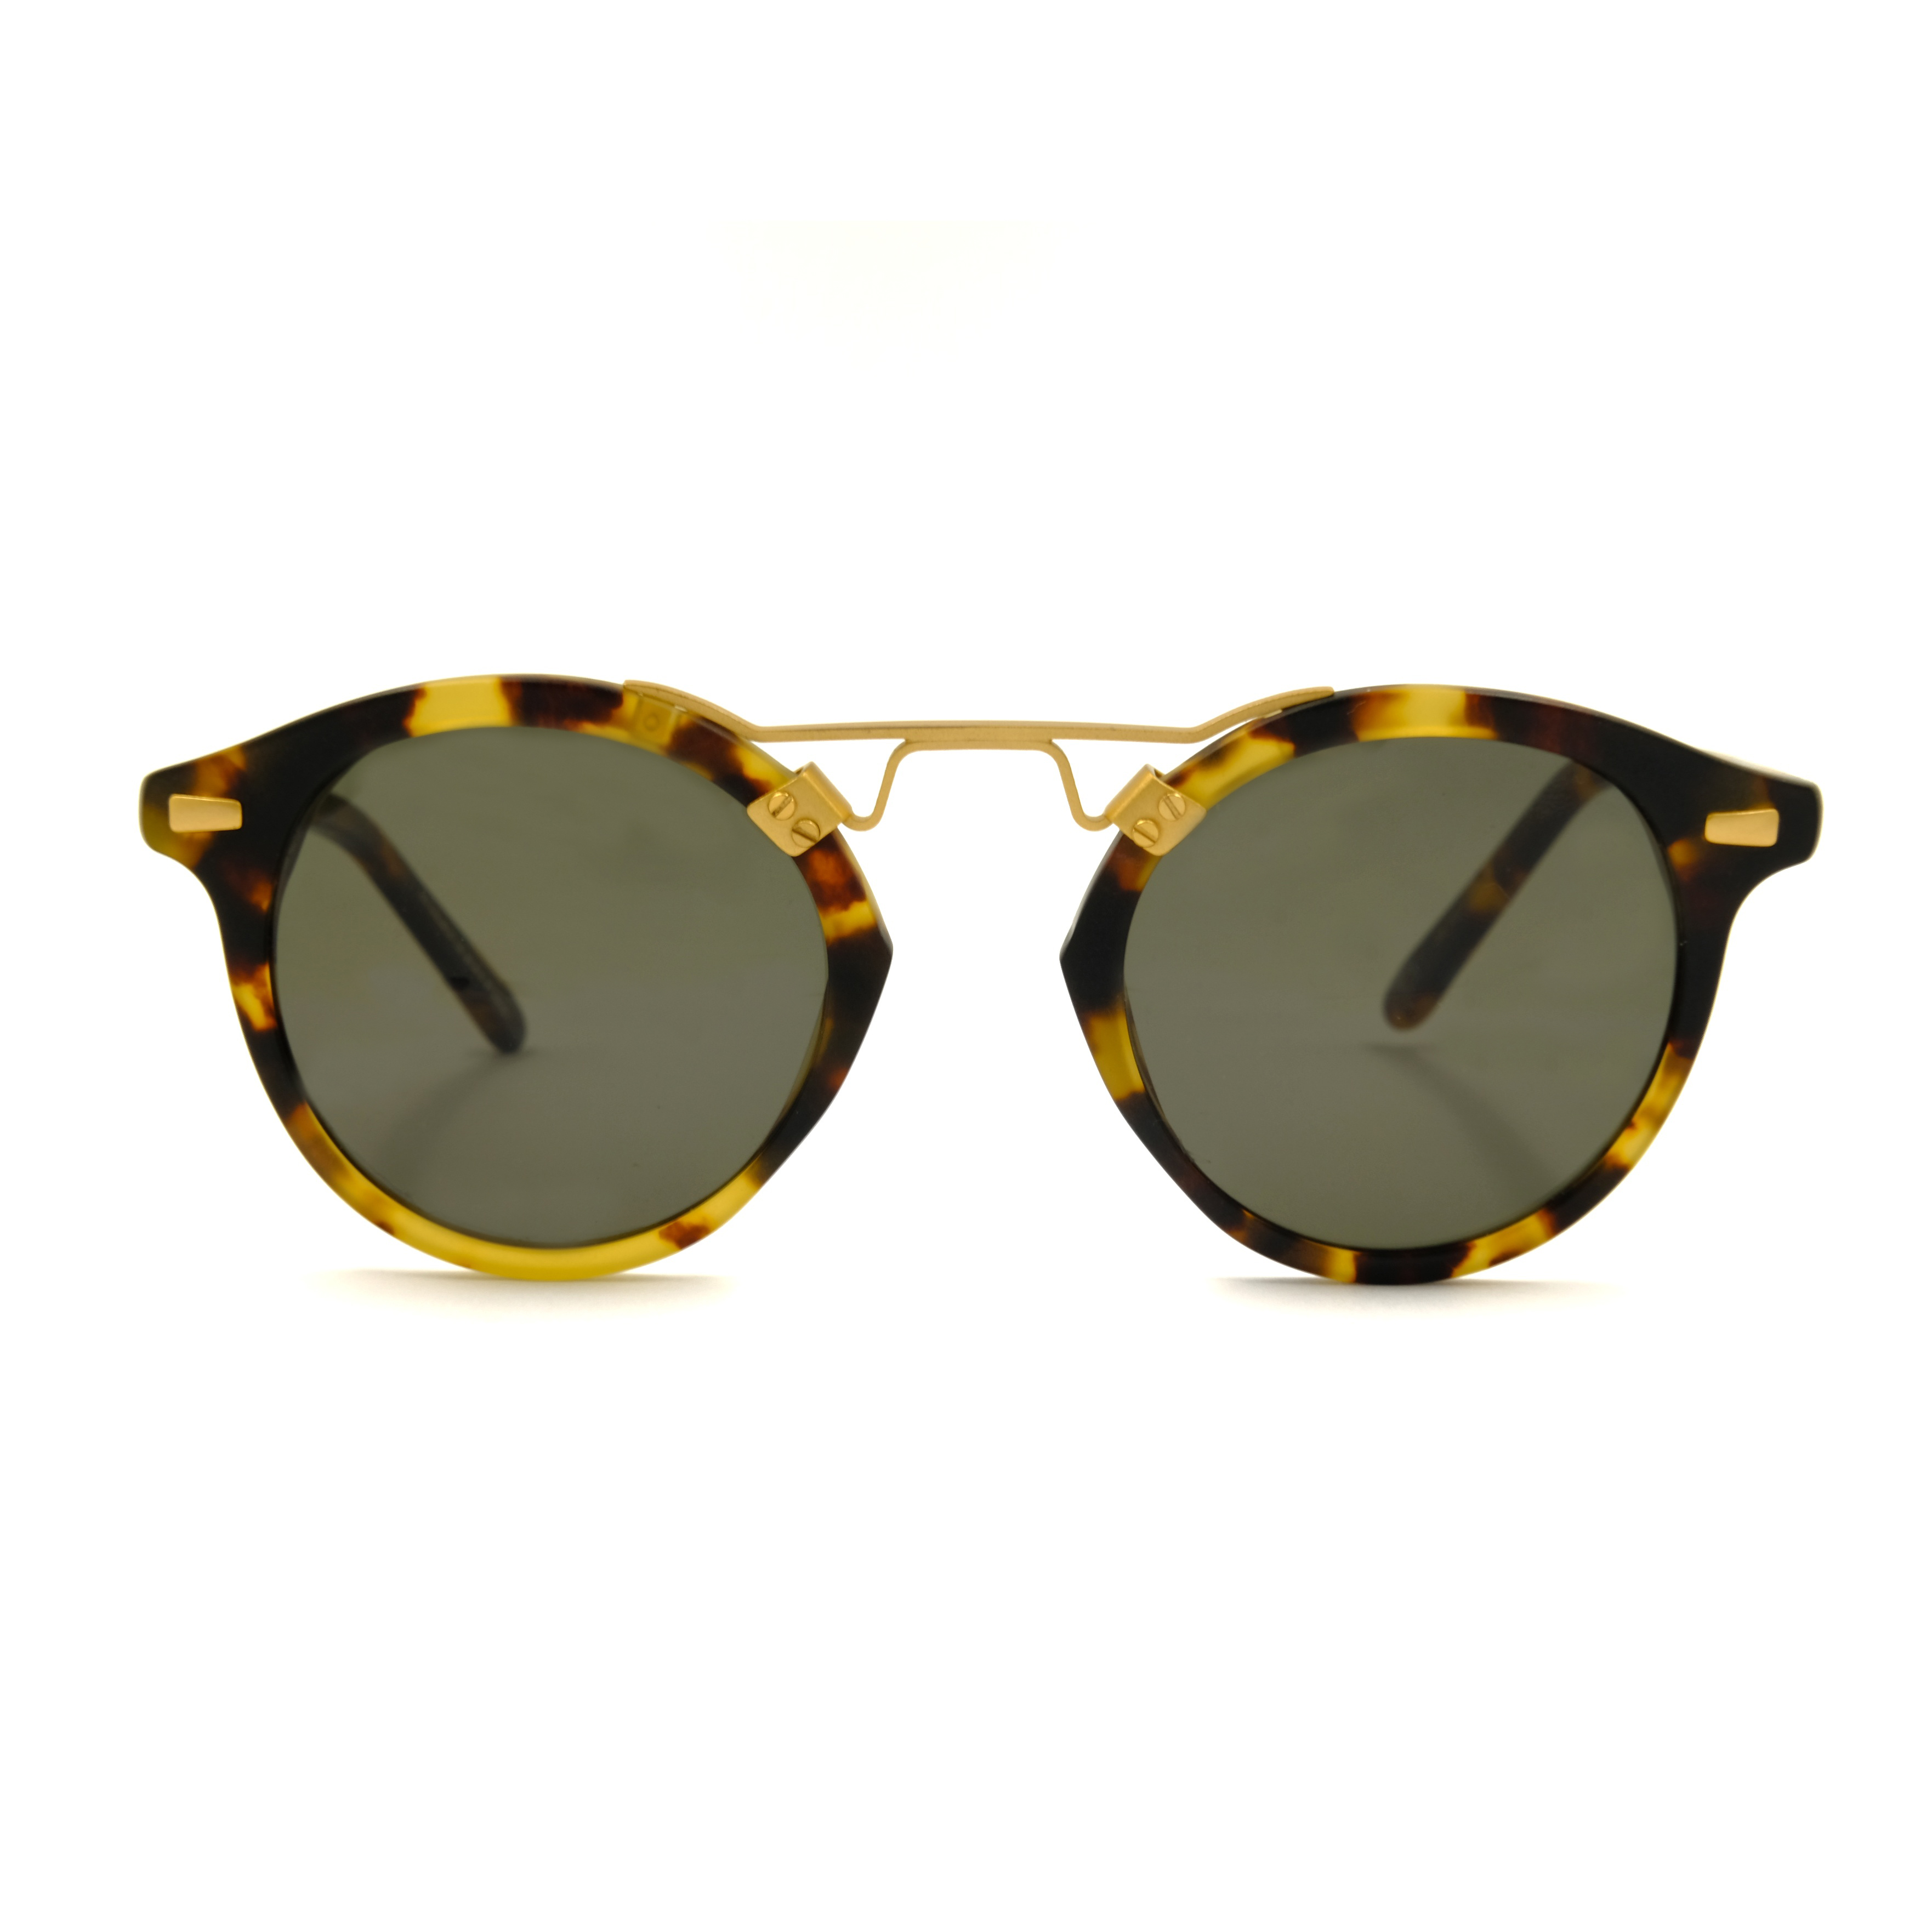 Gafas de sol de acetato de carey de metal dorado Proveedores de gafas de sol de marca personalizada